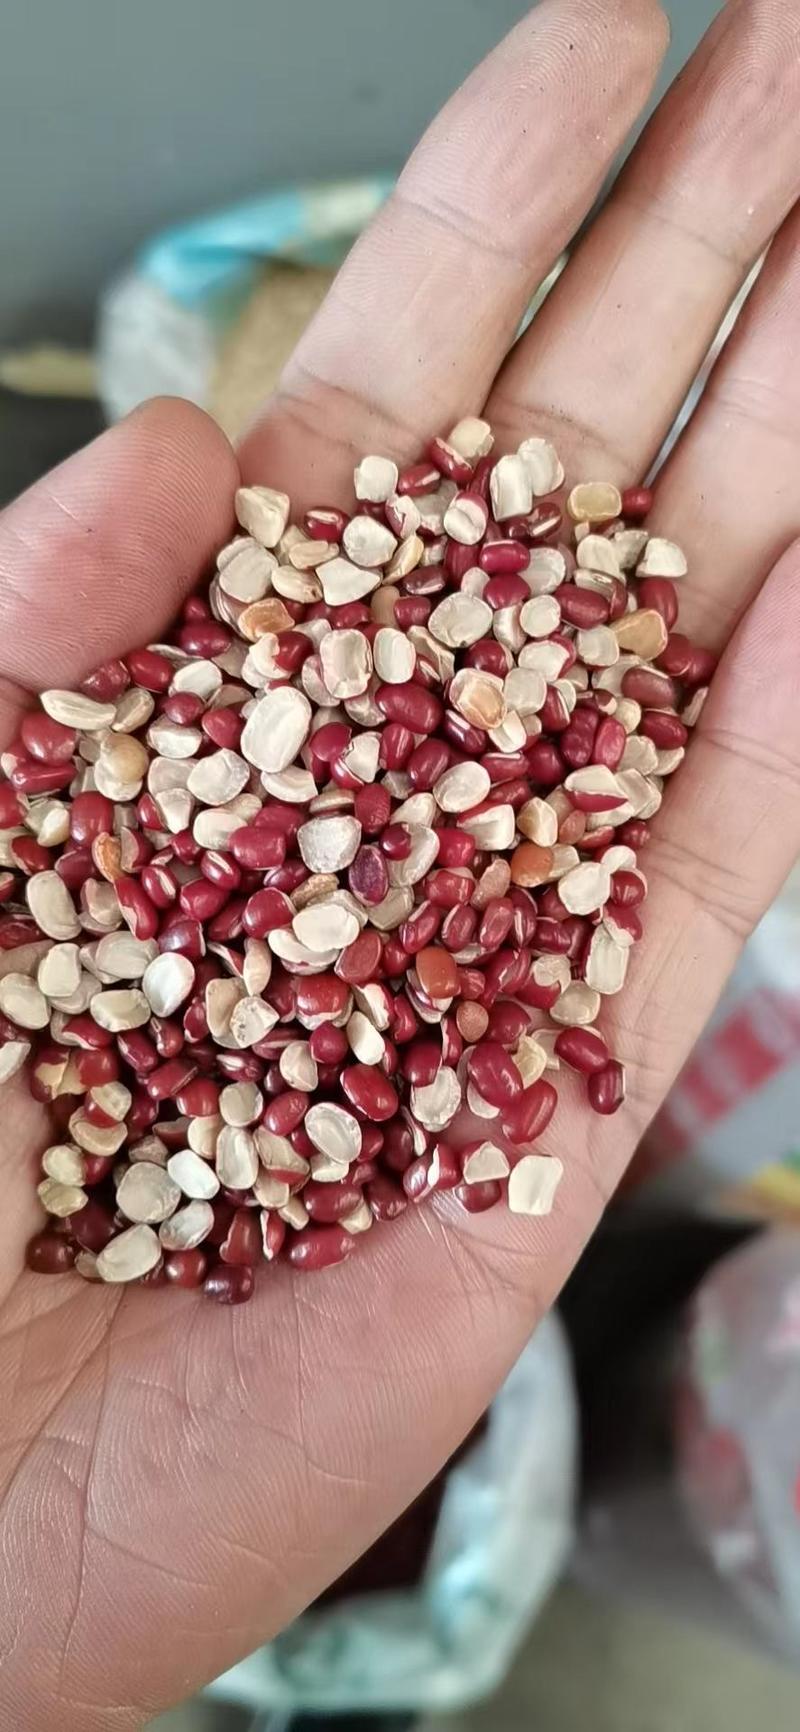 红豆掰，红小豆豆沙馅原料五谷杂粮袋装50斤